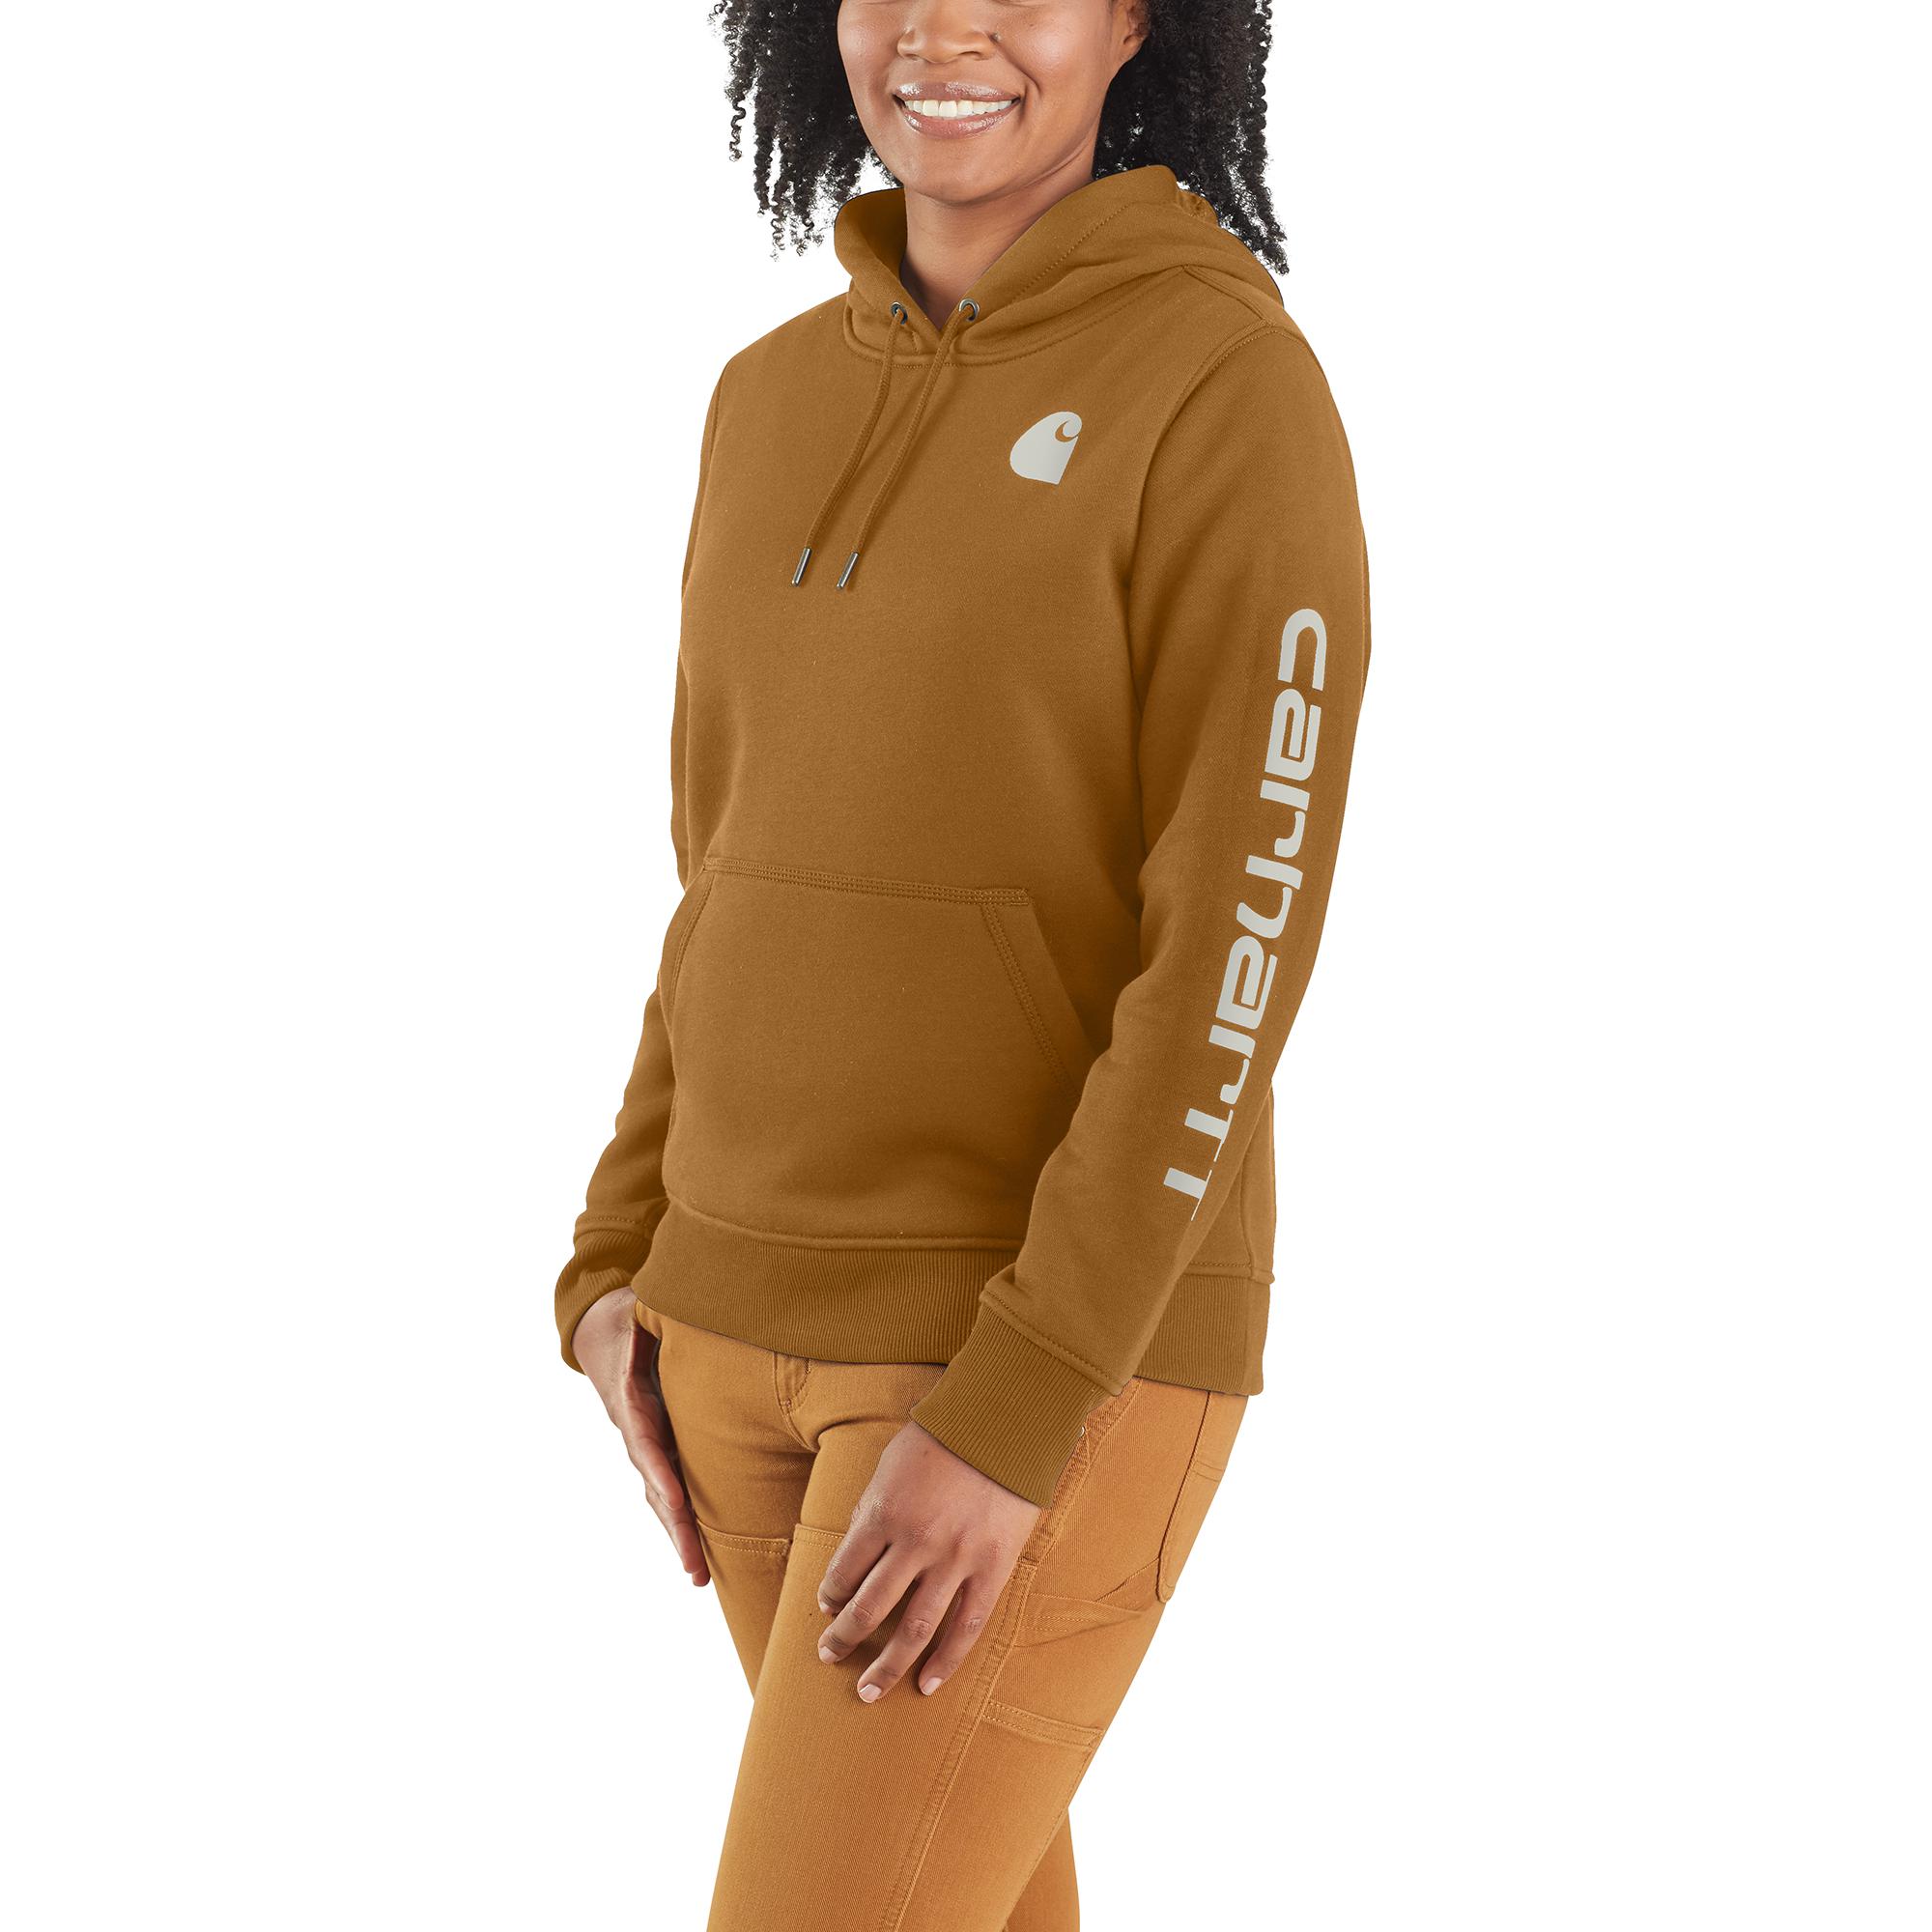 Carhartt Women's Fleece Long Sleeve Sweatshirt (Large) in the